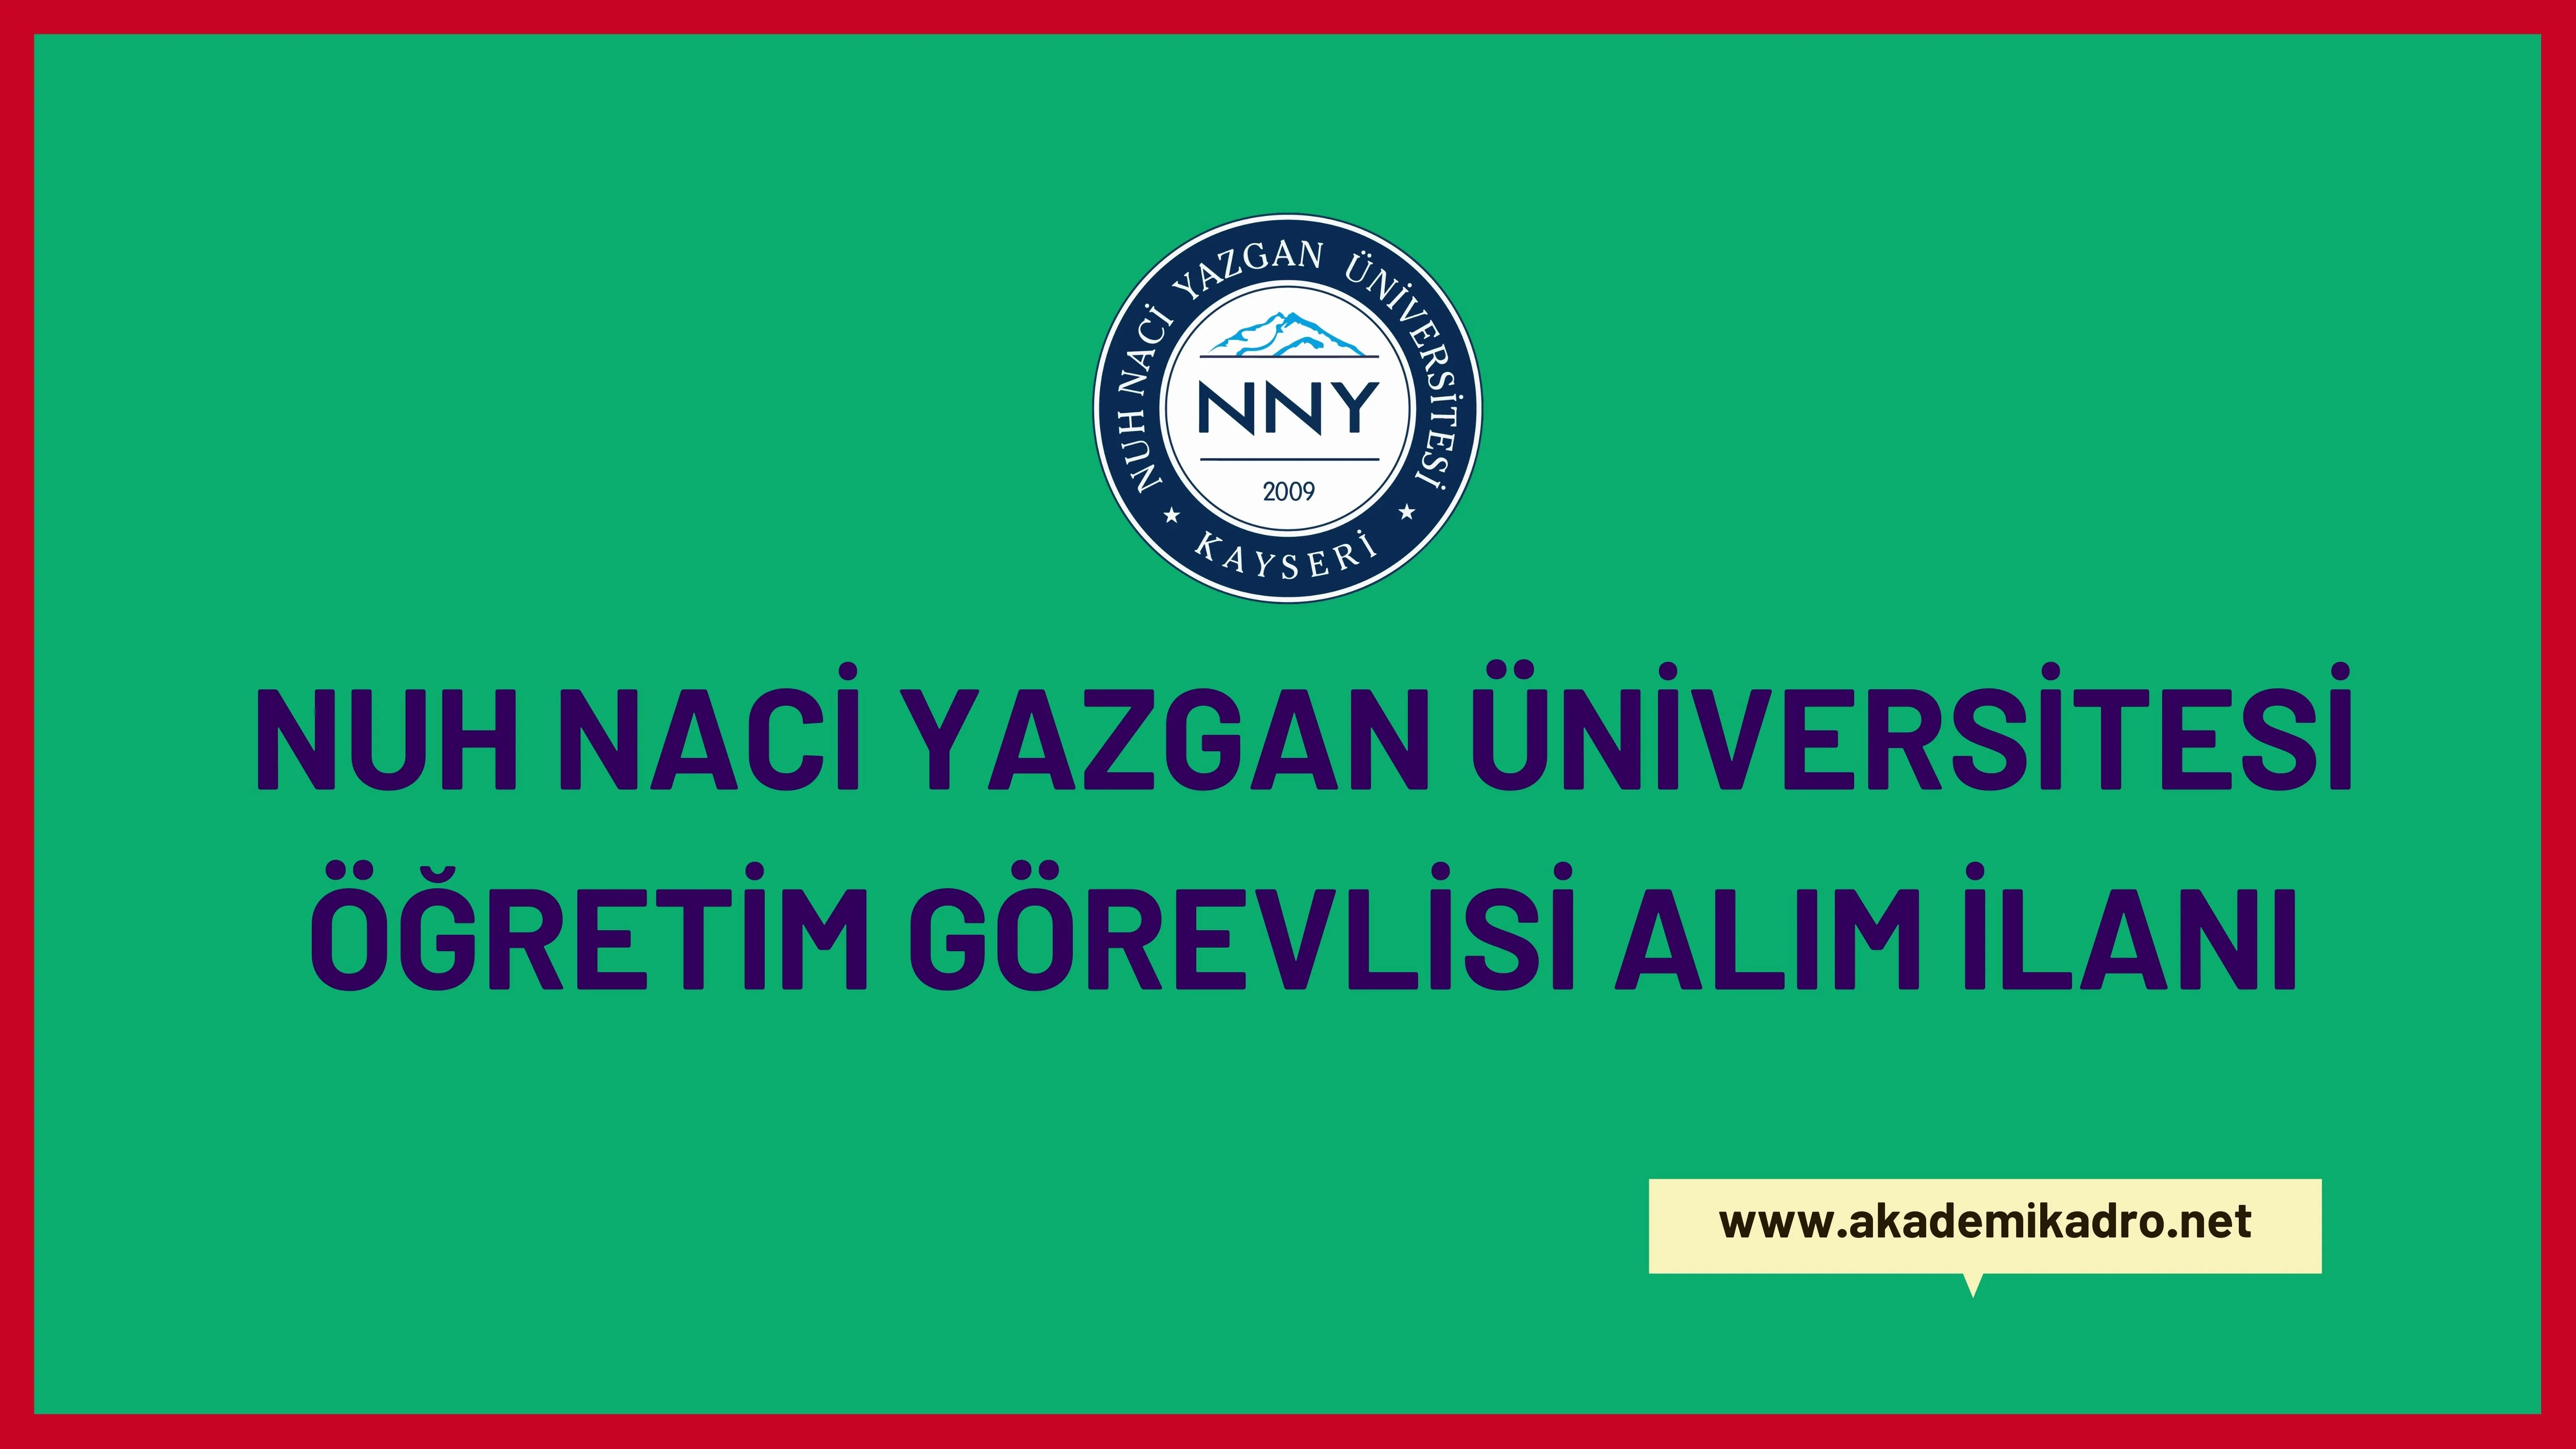 Nuh Naci Yazgan Üniversitesi 8 Öğretim görevlisi ve 31 Öğretim üyesi alacak.